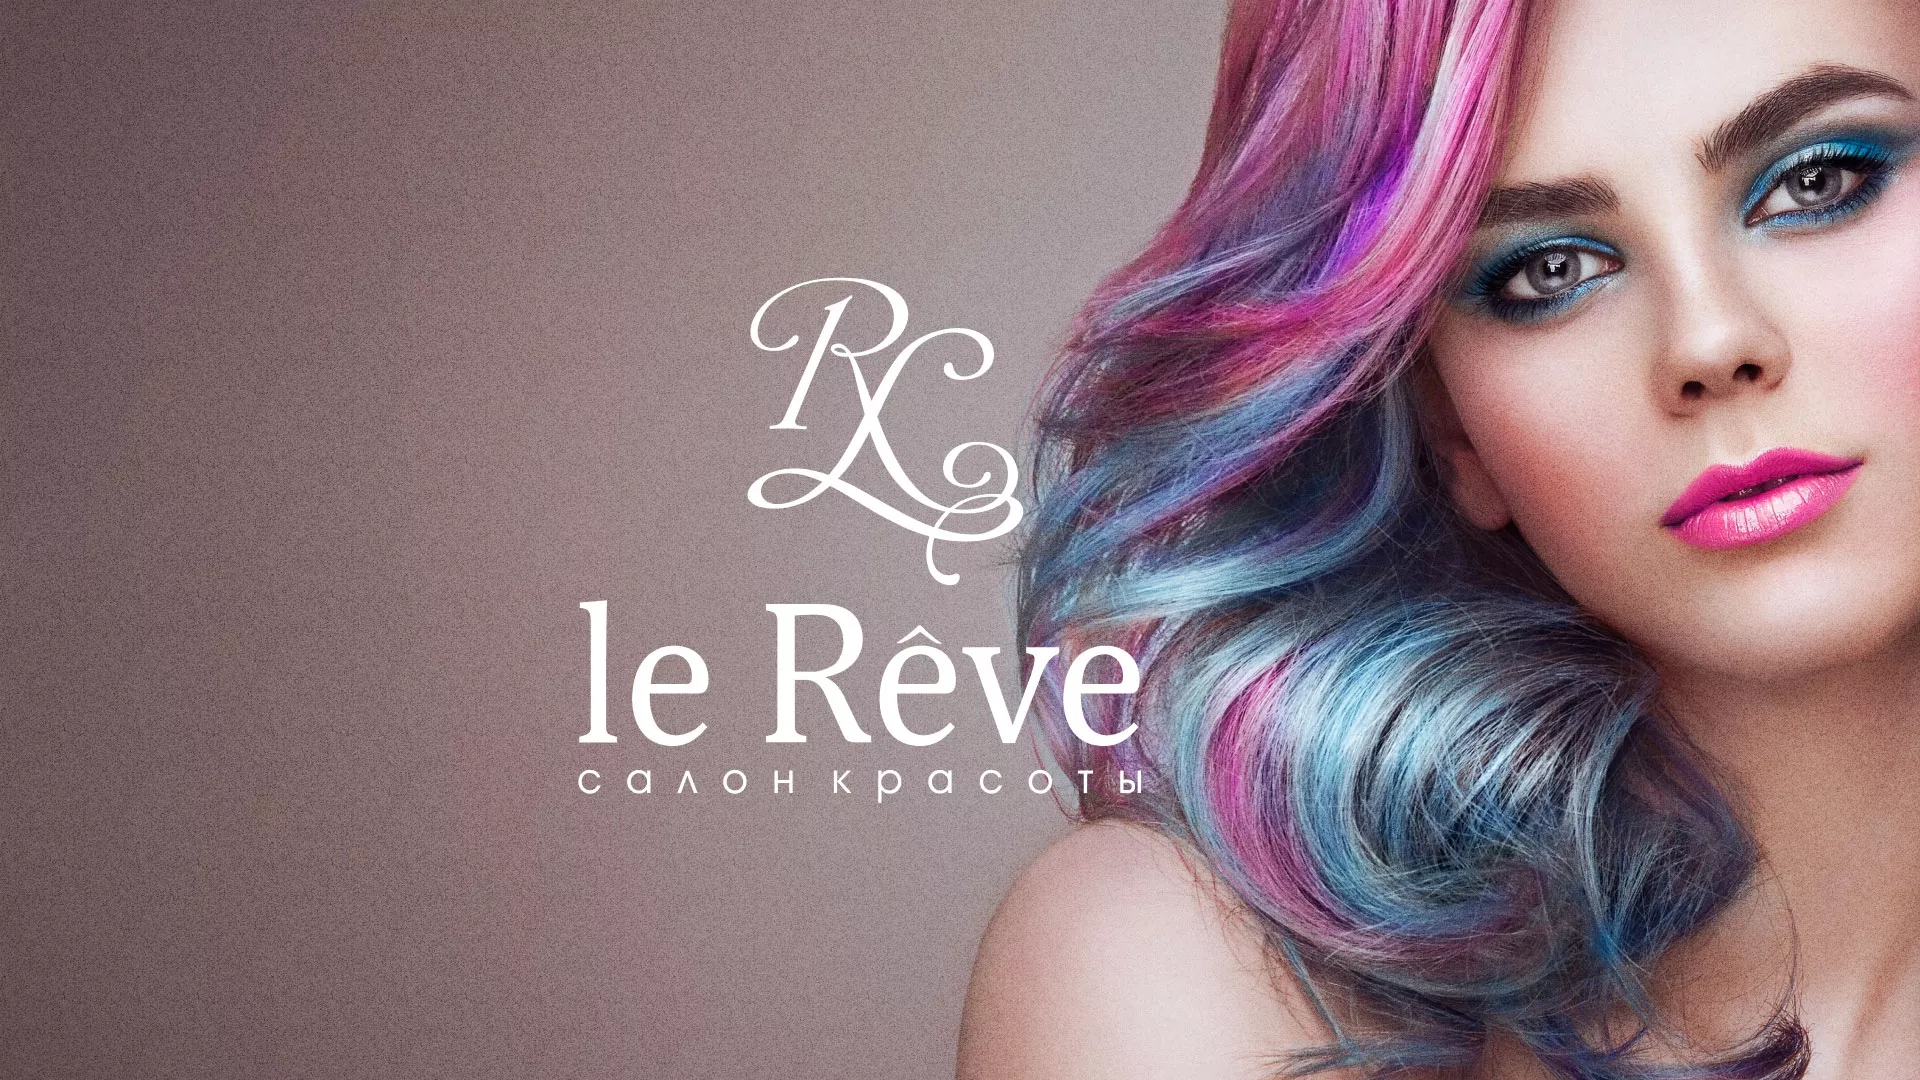 Создание сайта для салона красоты «Le Reve» в Кашине